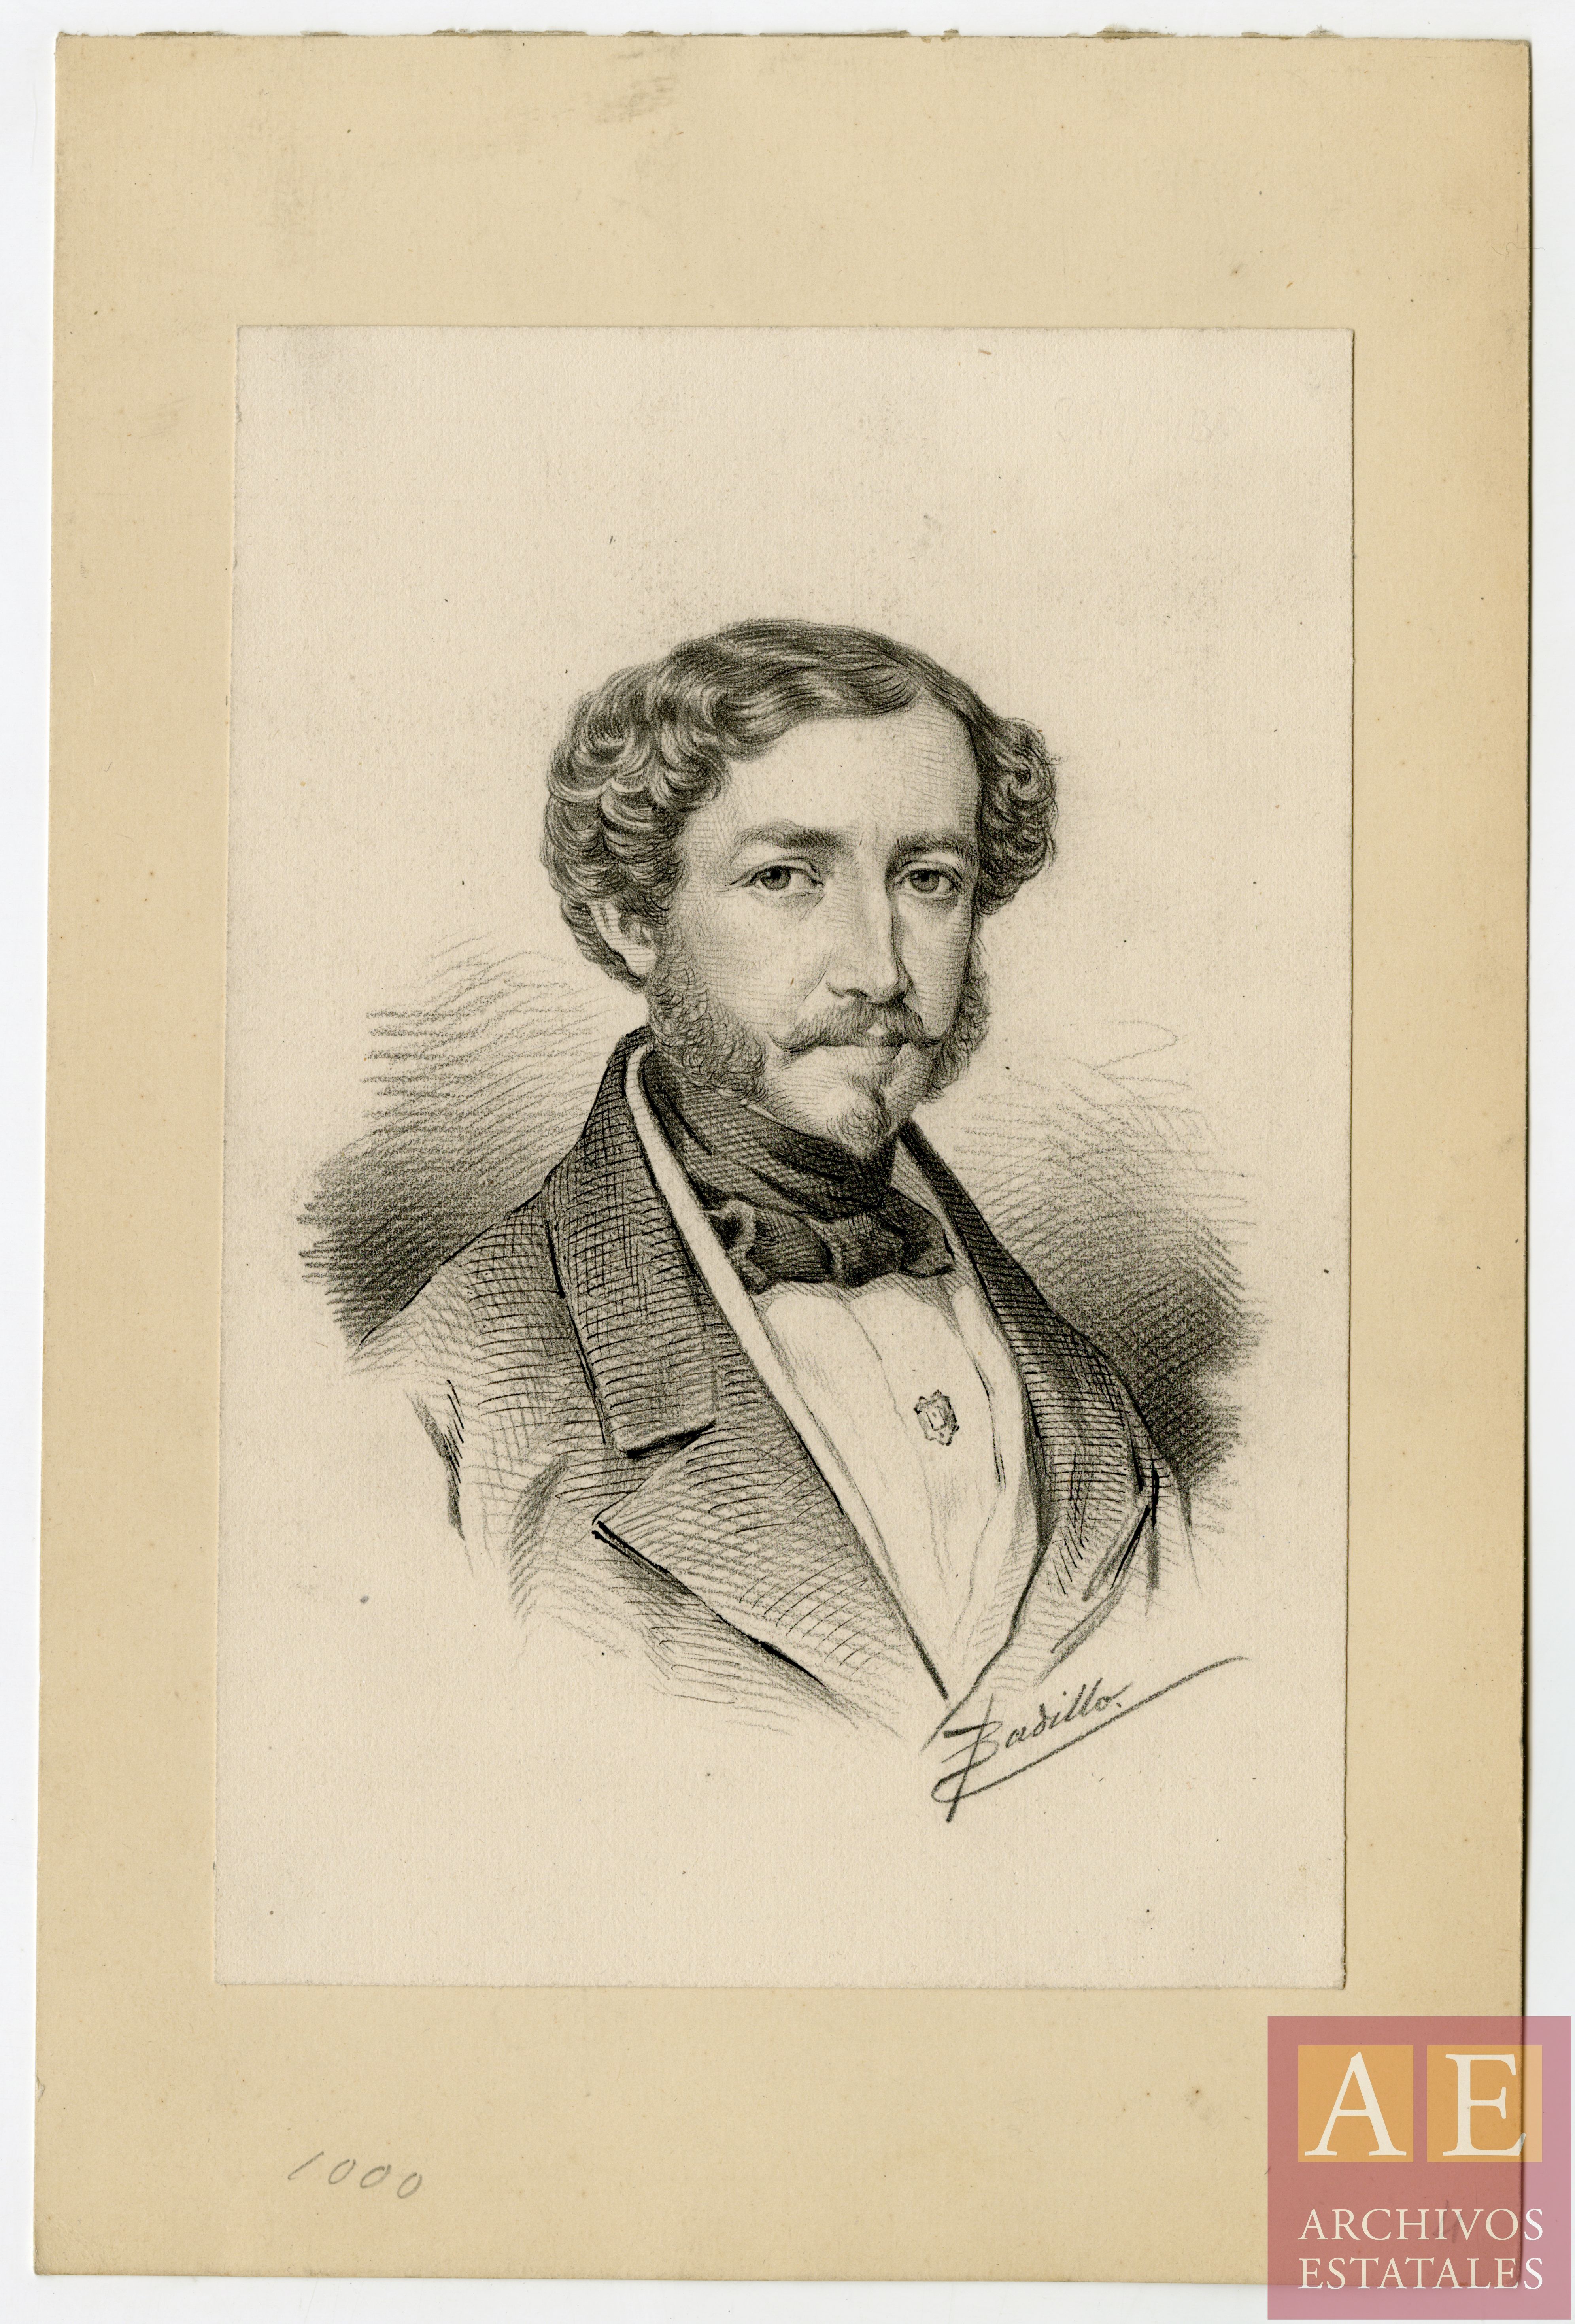 Arteaga Palafox, Andrés Avelino de (1780-1864)